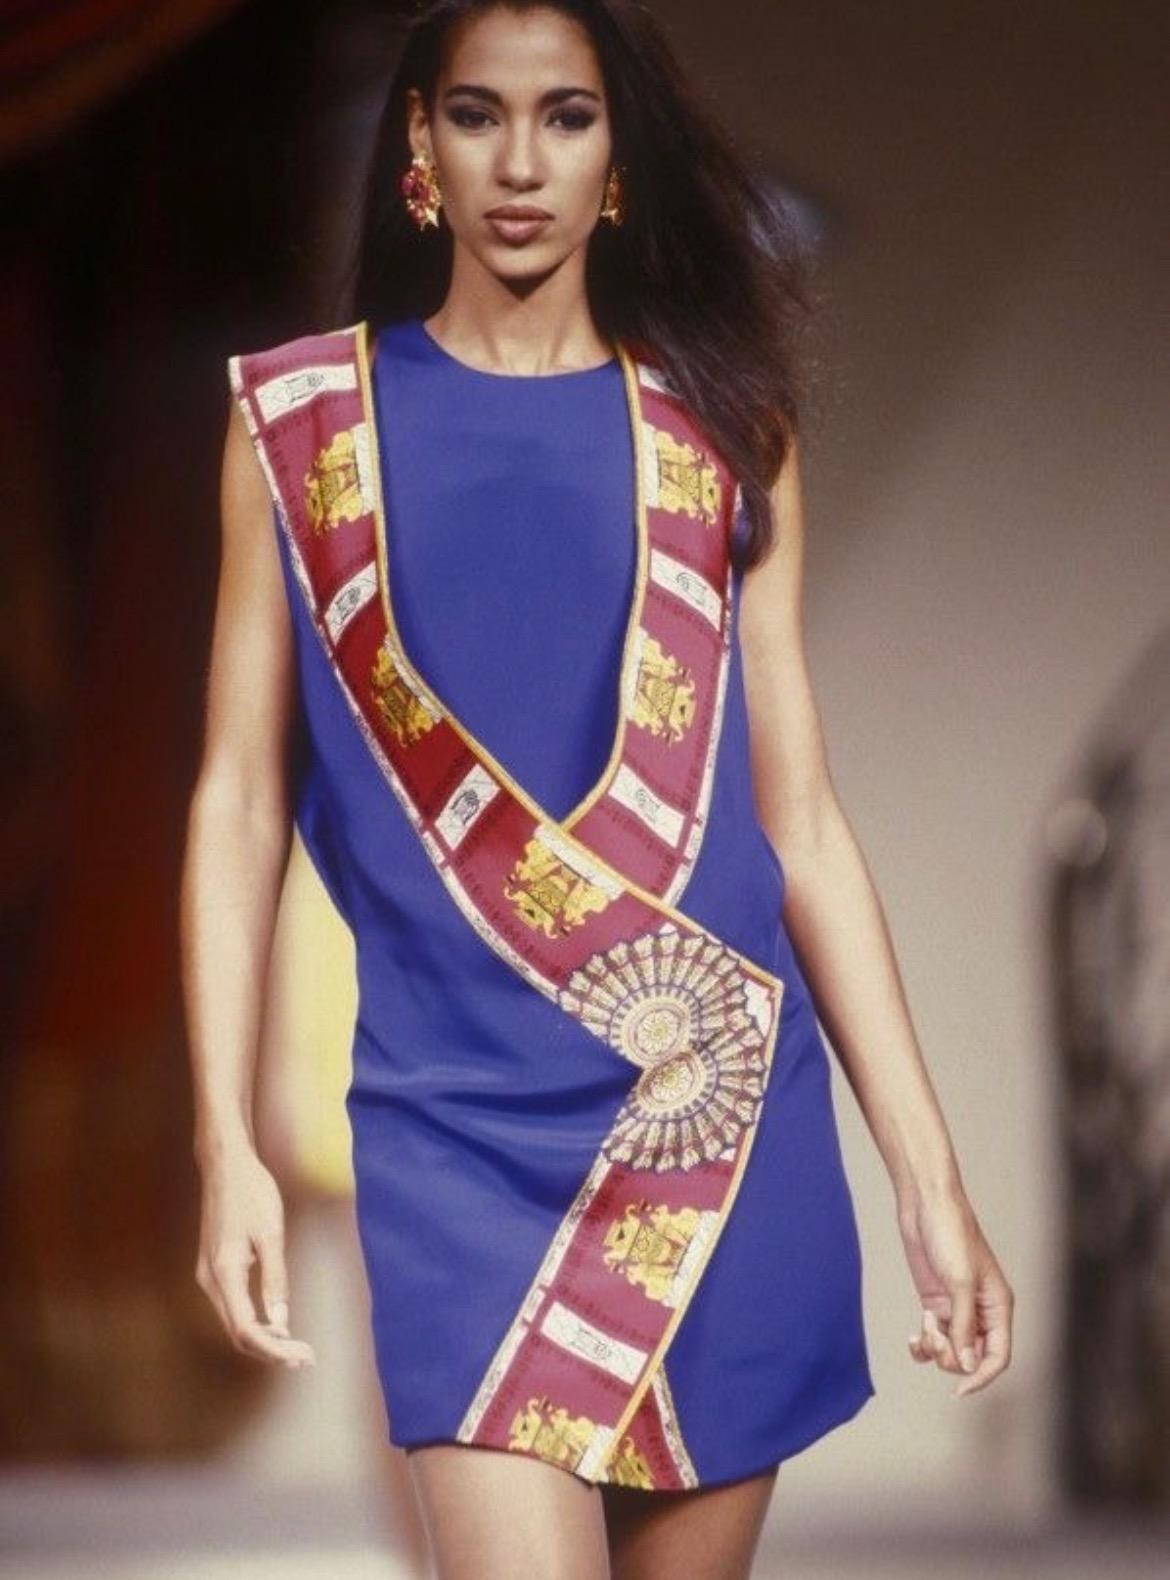 Wir präsentieren ein atemberaubendes Atelier Versace-Kleider-Set aus der S/S 1991 Kollektion, entworfen von Gianni Versace. Dieses außergewöhnliche Stück ist auf dem Laufsteg der Haute Couture der Saison zu sehen. Das zweiteilige Kleid besteht aus